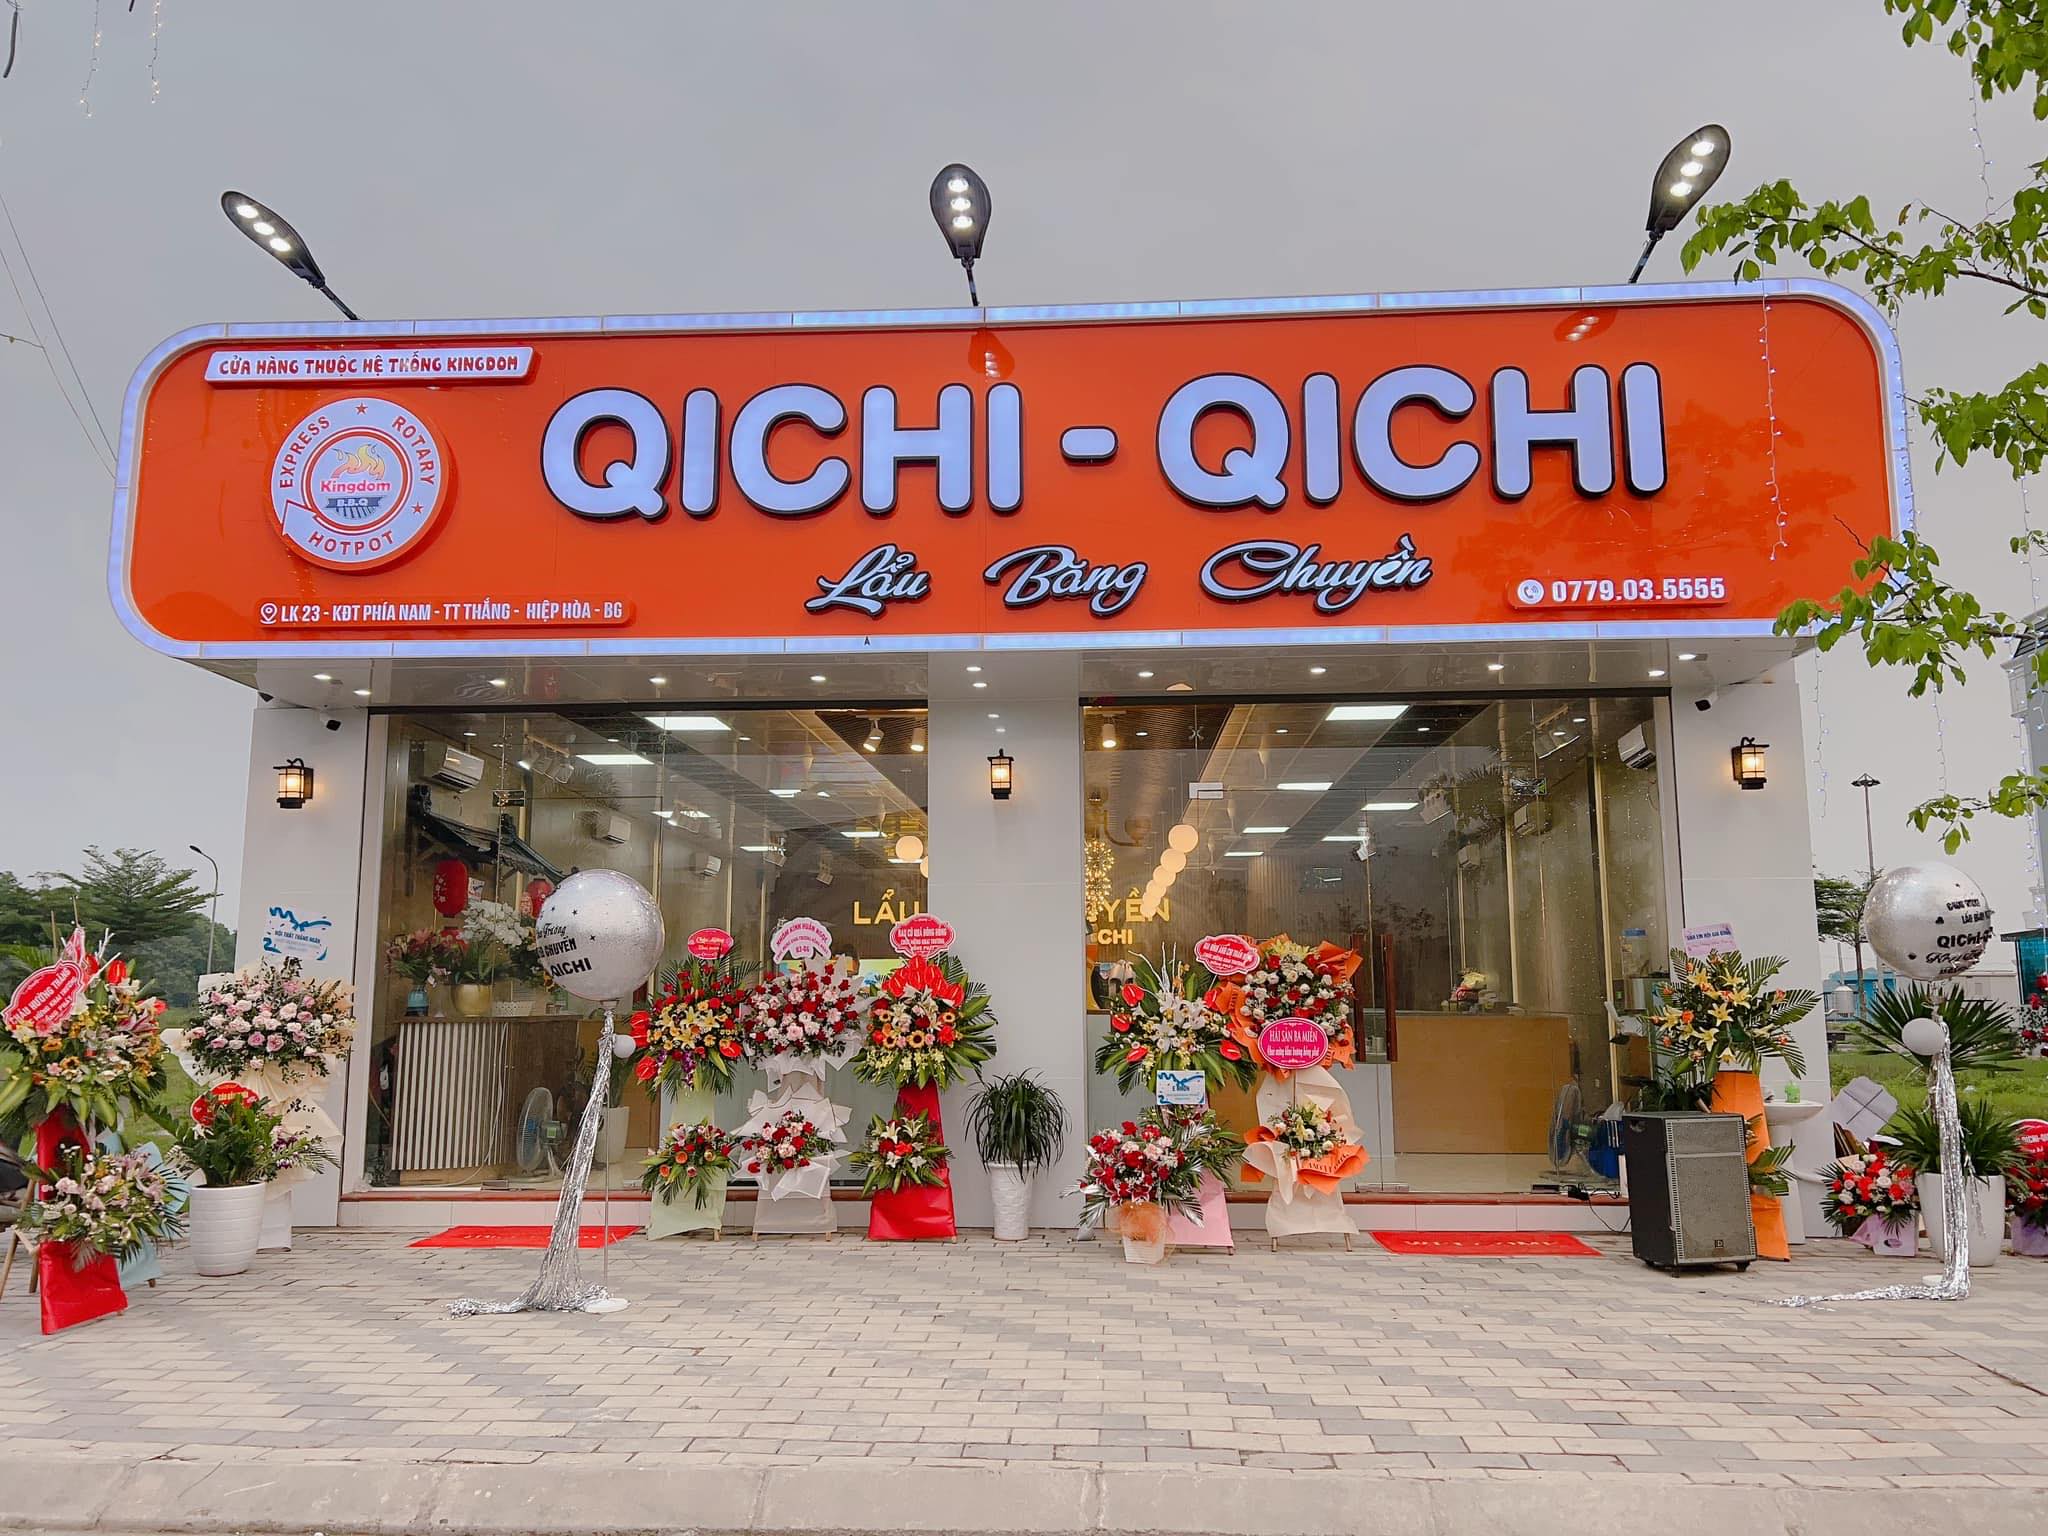 Qichi-Qichi Hotpot Lẩu Băng Chuyền ảnh 1